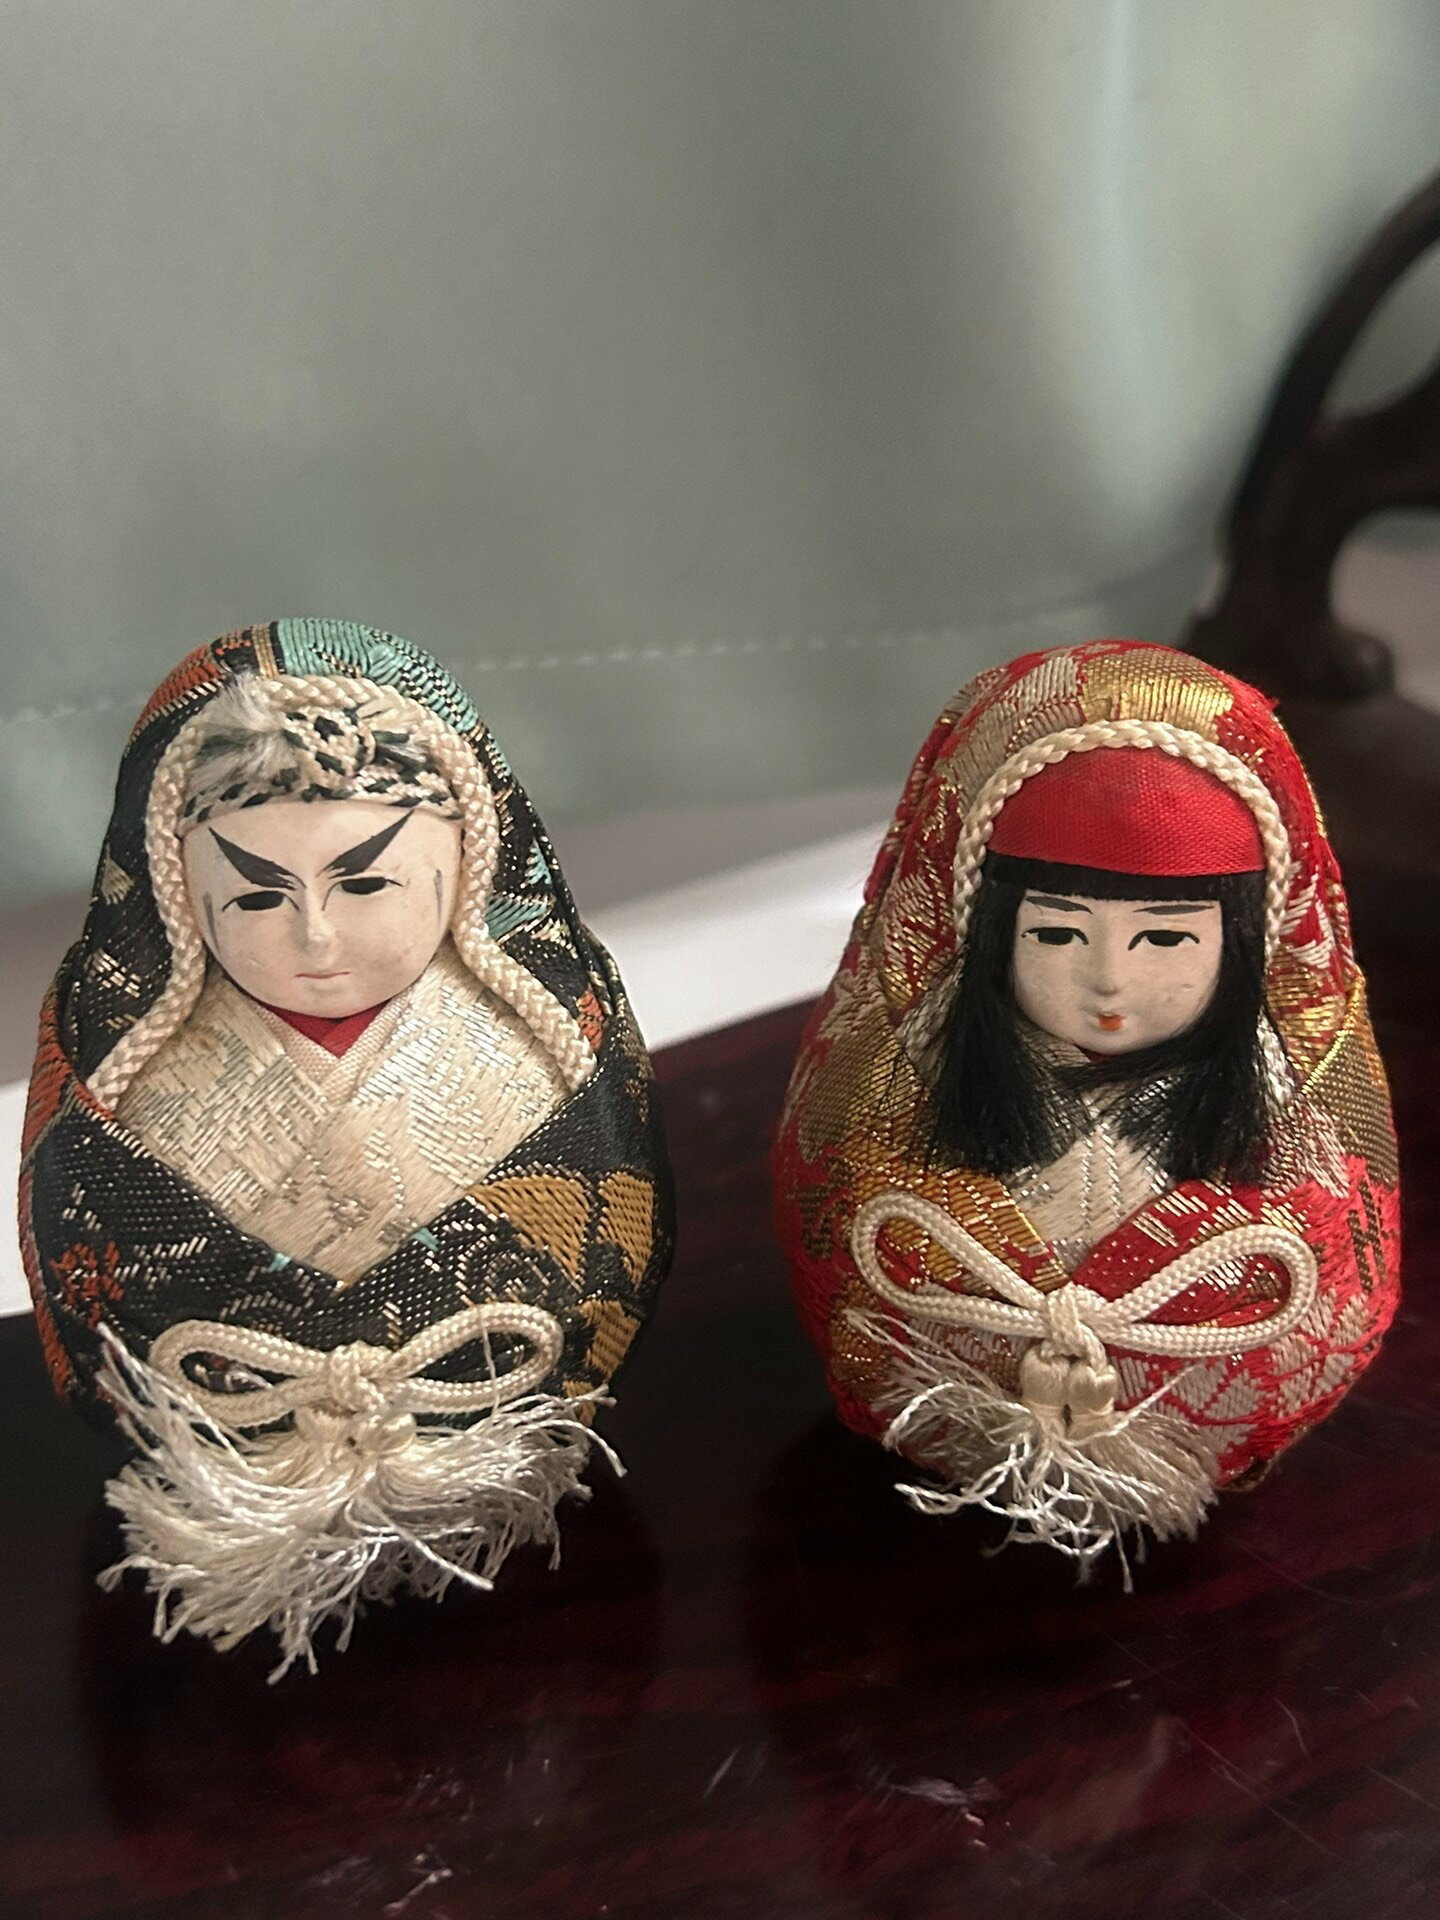 日本回流 姬達摩 西陣織 昭和時期 日本娃娃 人形 置物